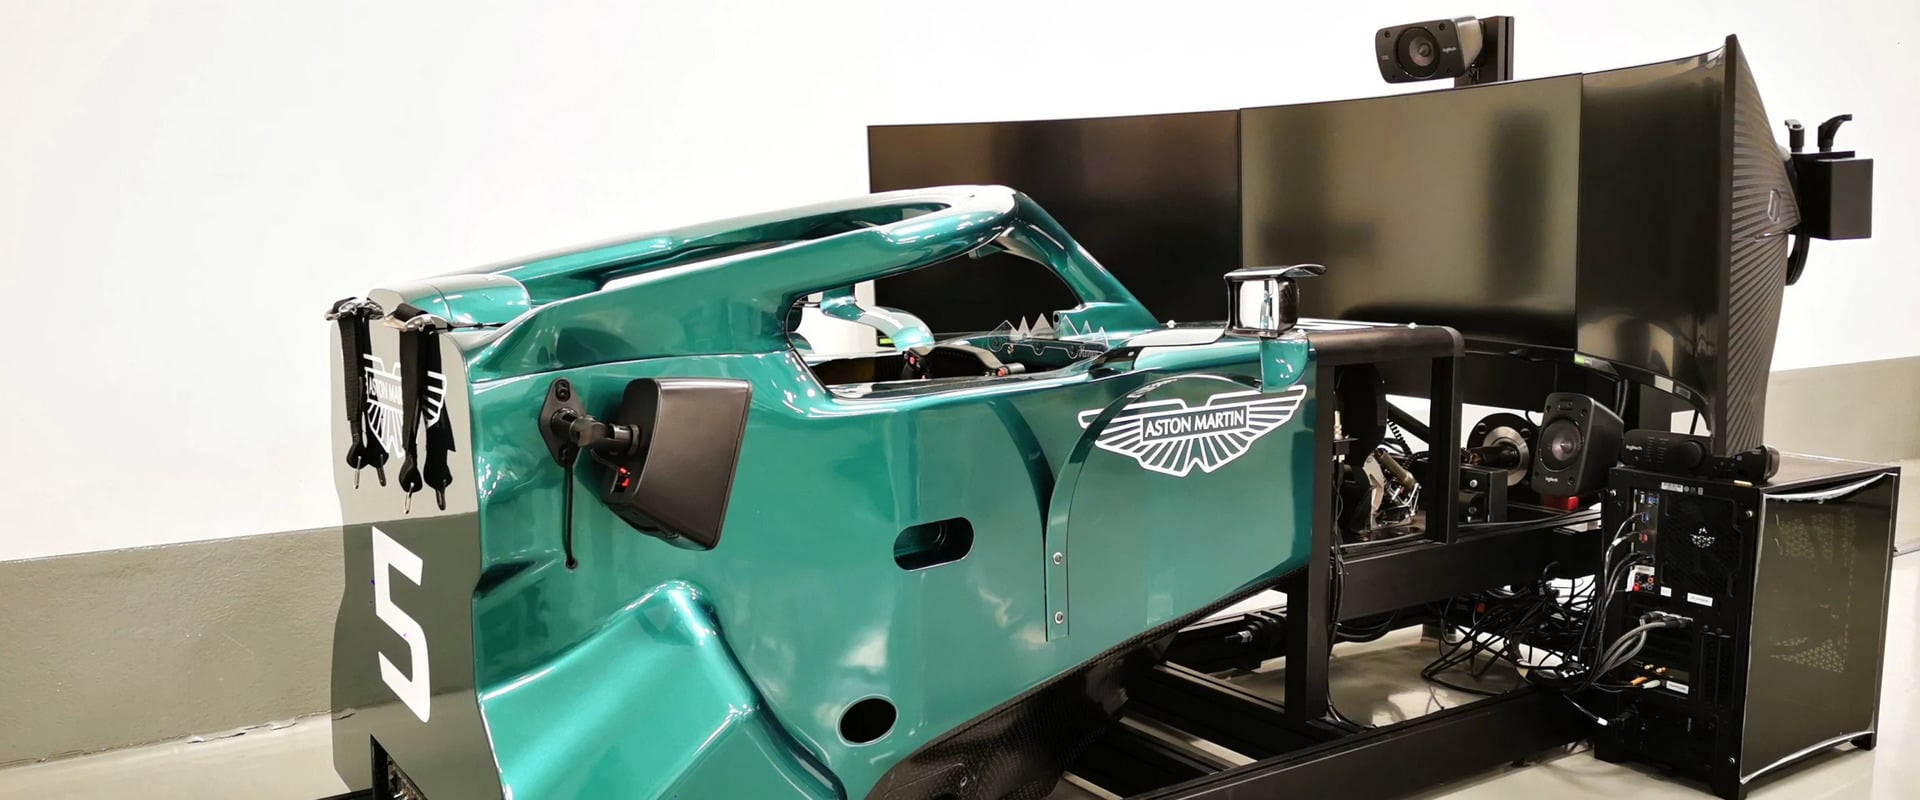 Vettel si potrà allenare a casa con il simulatore fornito da Aston Martin thumbnail